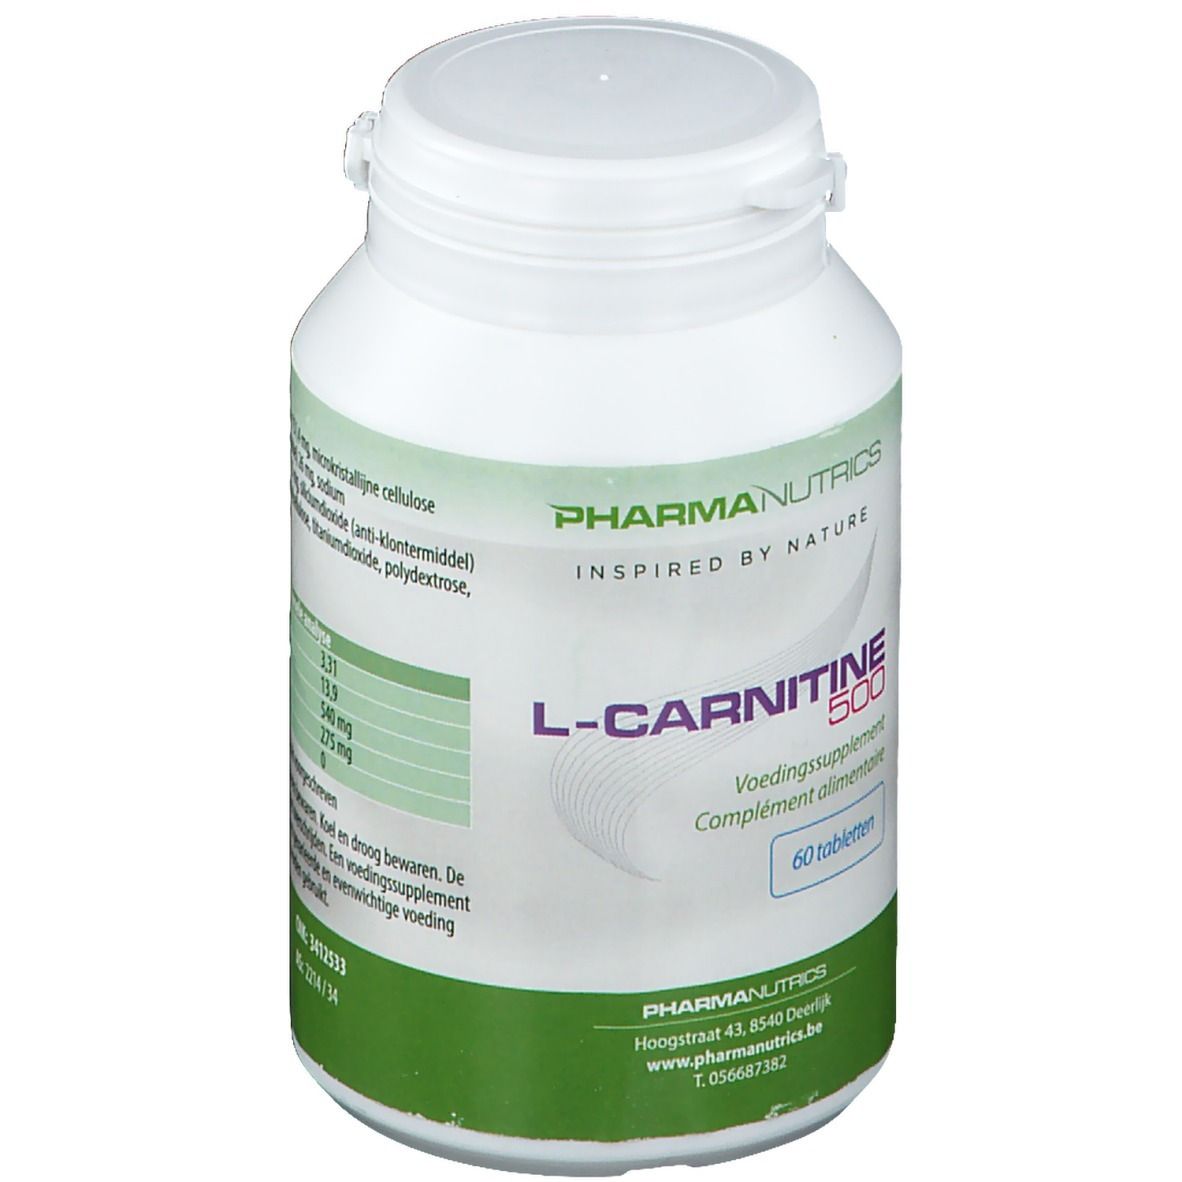 PharmaNutrics L-Carnitine 500